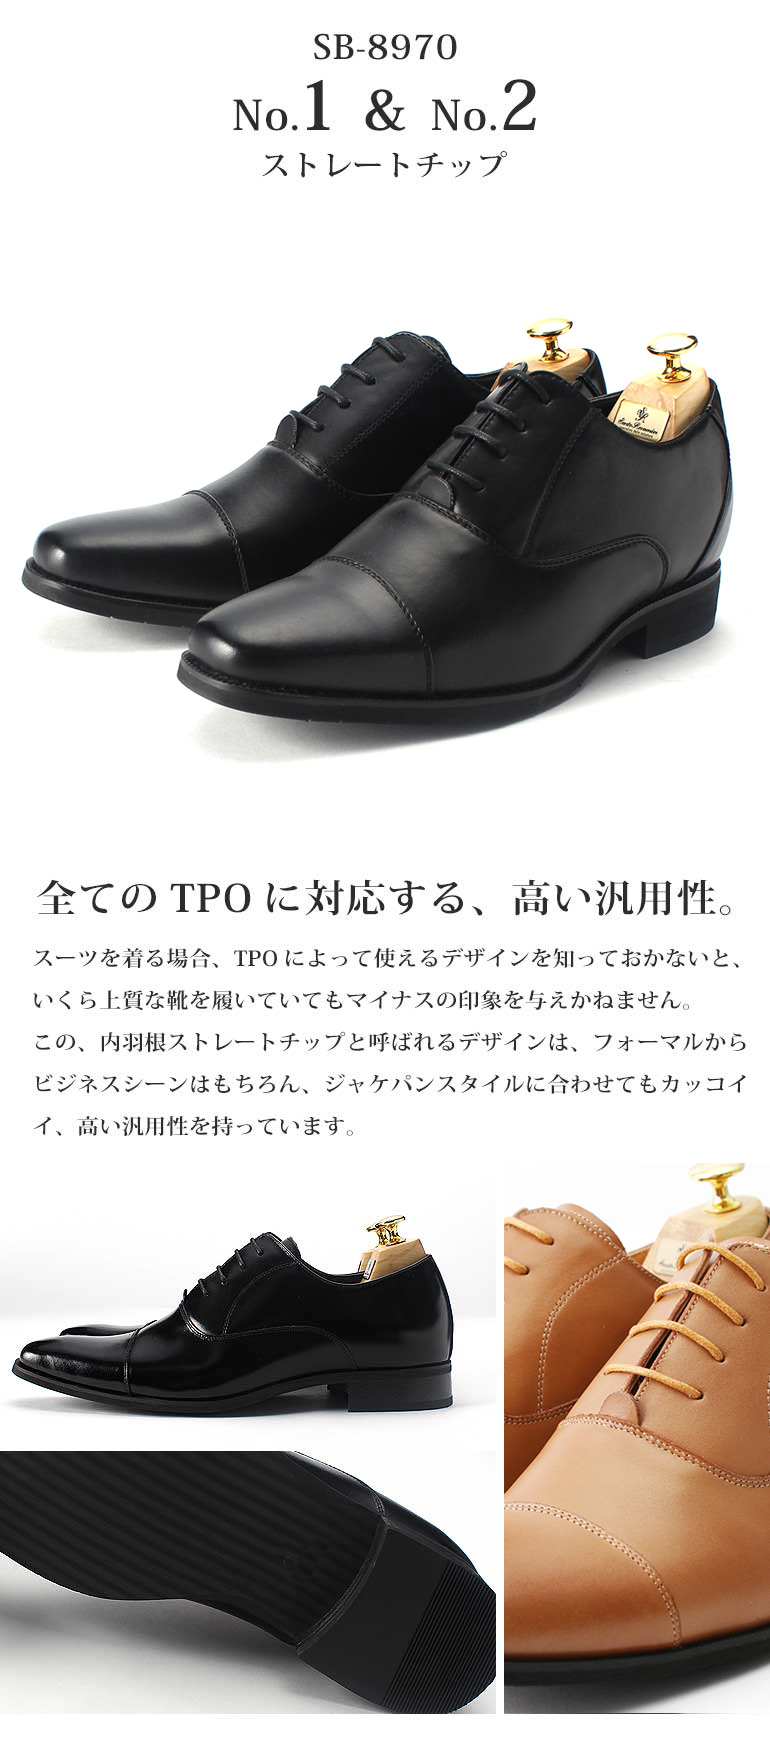 【楽天市場】日本製 本革 ビジネスシューズ 革靴 ドレスシューズ メンズ 靴 レザーシューズ 紳士靴 サラバンド 6cmUPシークレット